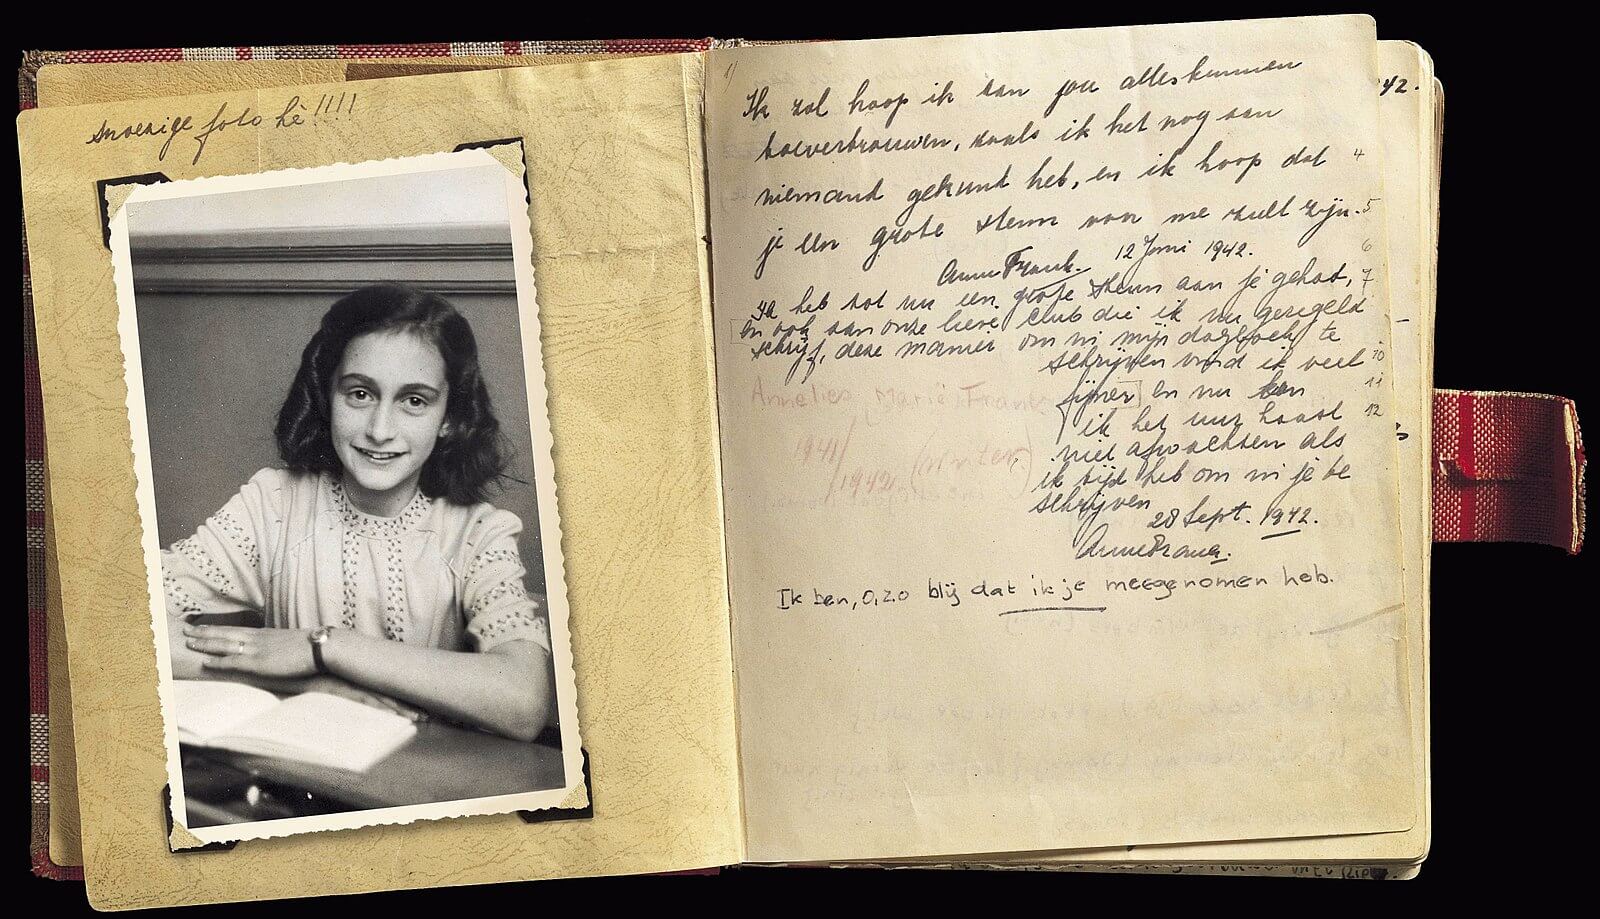 El diario de Ana Frank, un clásico obligatorio para adolescentes